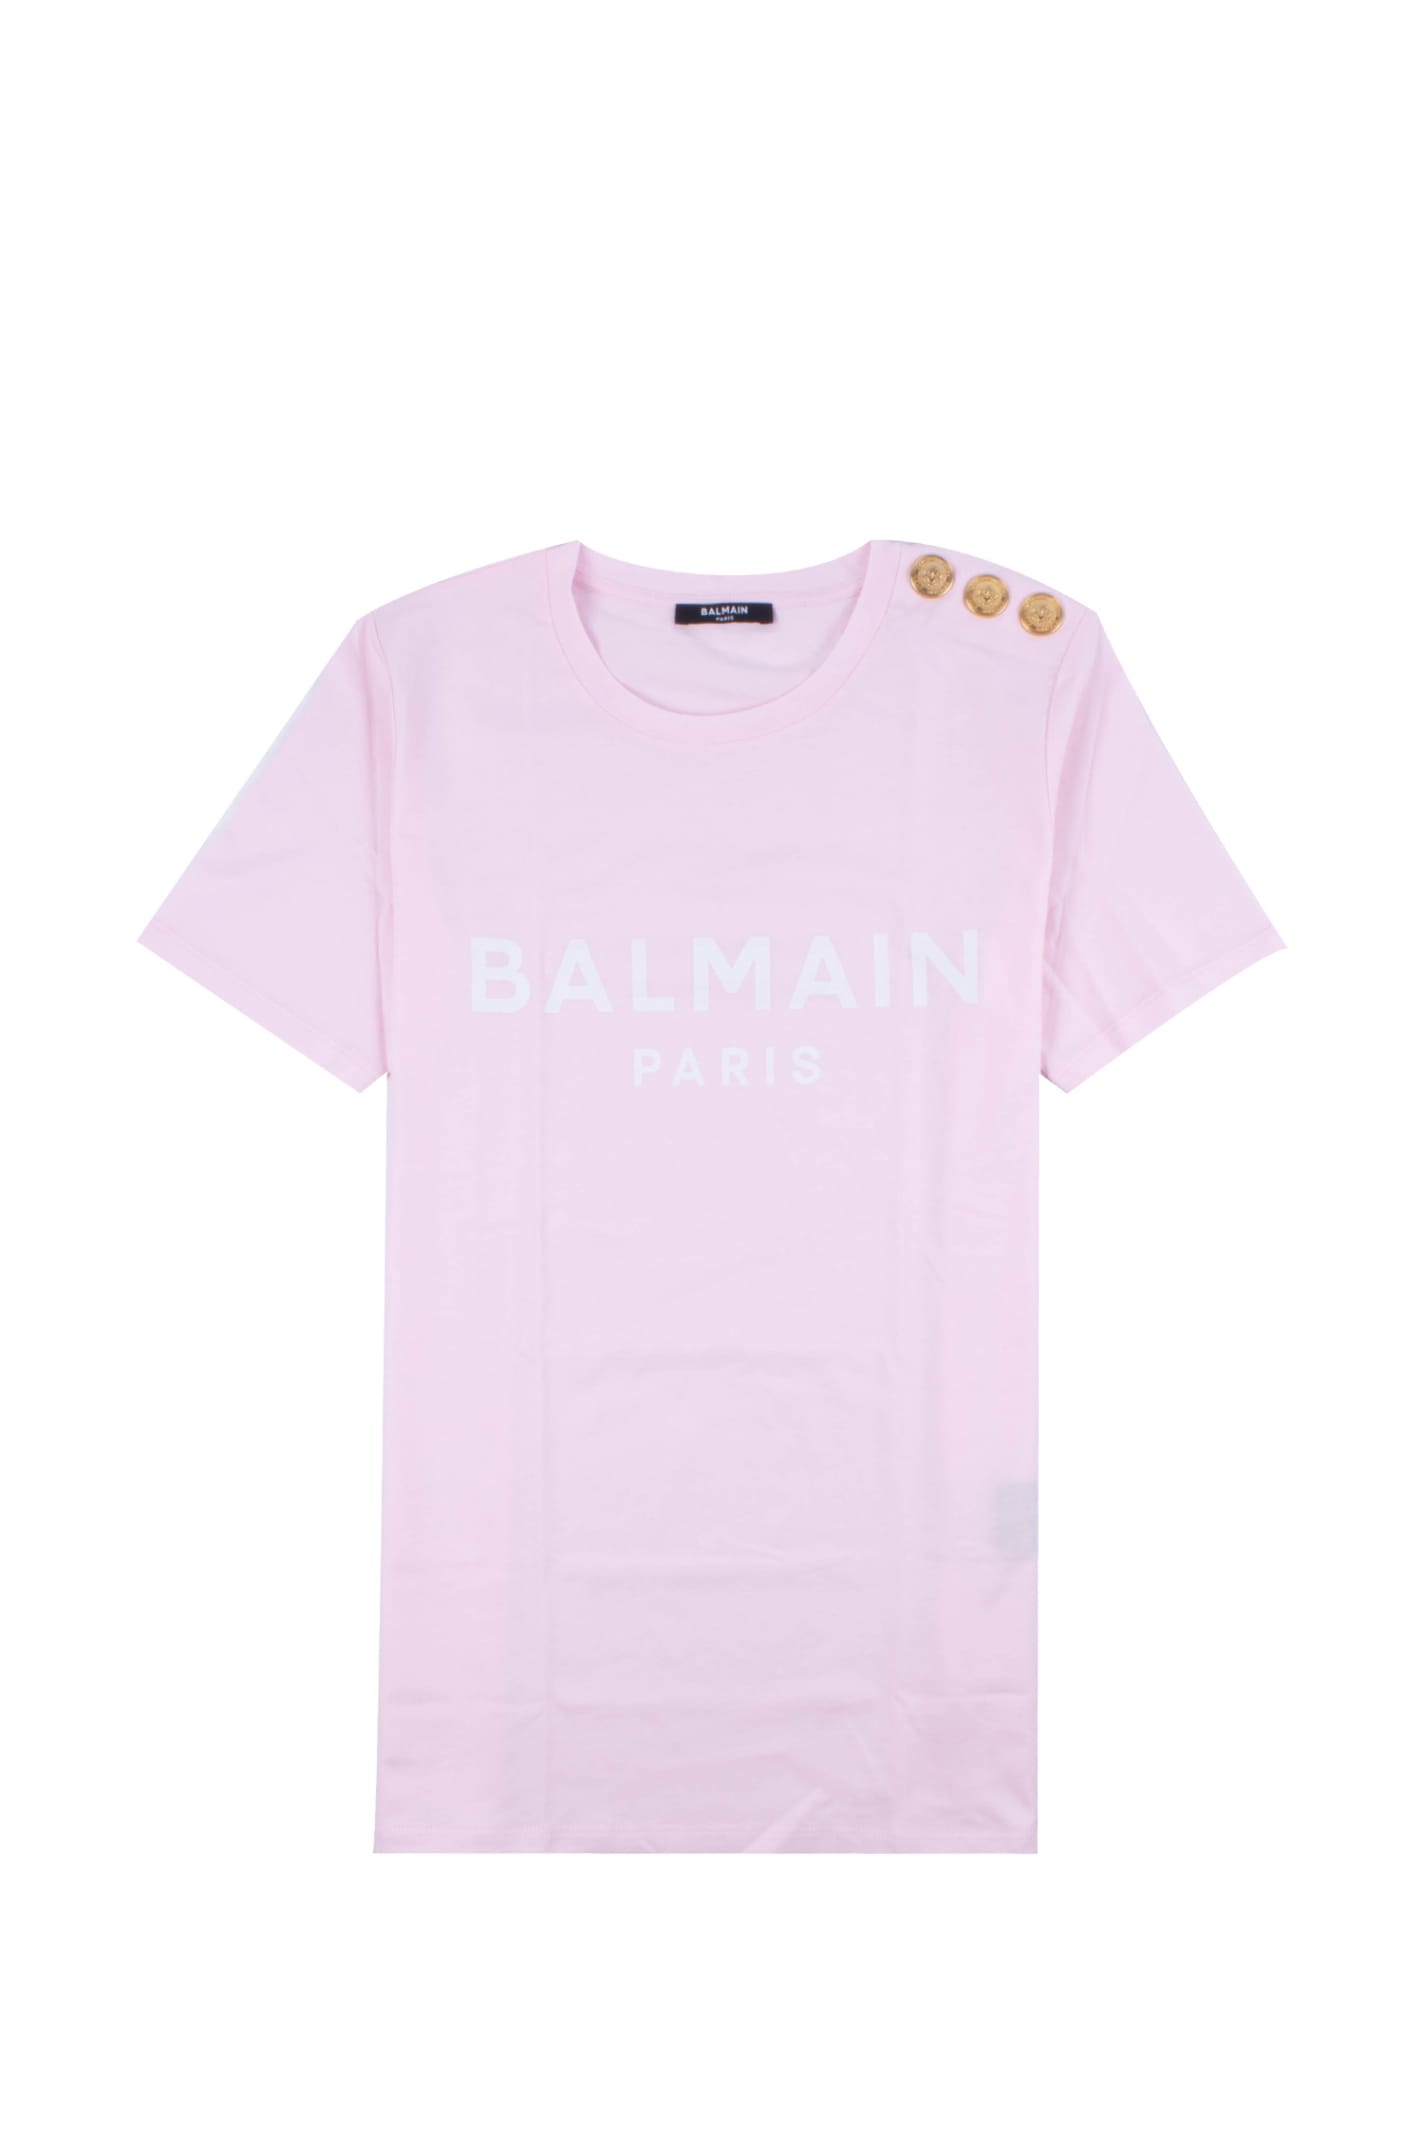 Pink Cotton T-shirt With Balmain Logo